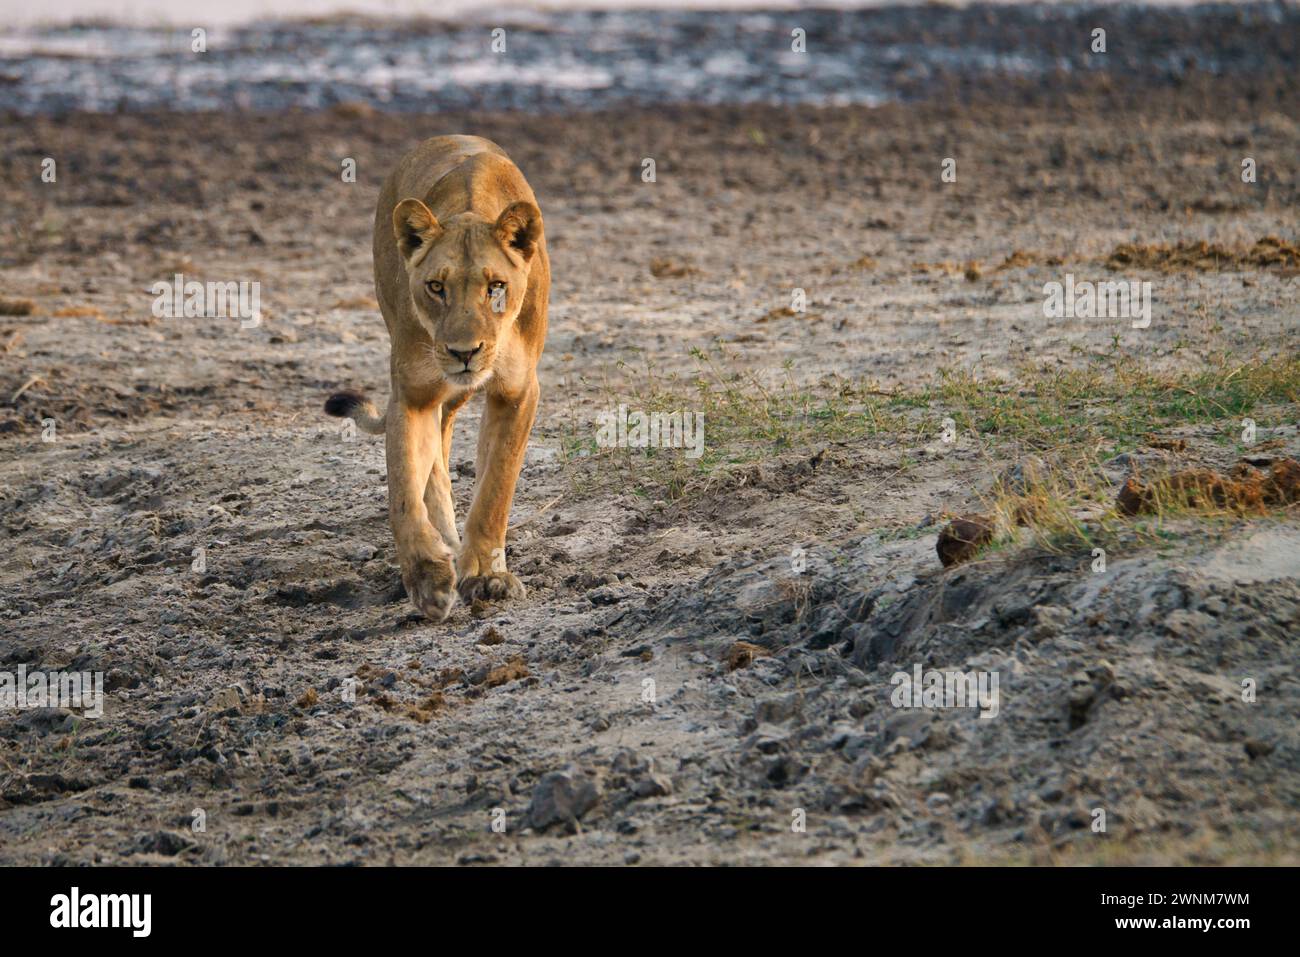 Afrikanischer Löwe, der auf die Kamera zugeht, mit fokussiertem Blick auf ihr Gesicht Stockfoto